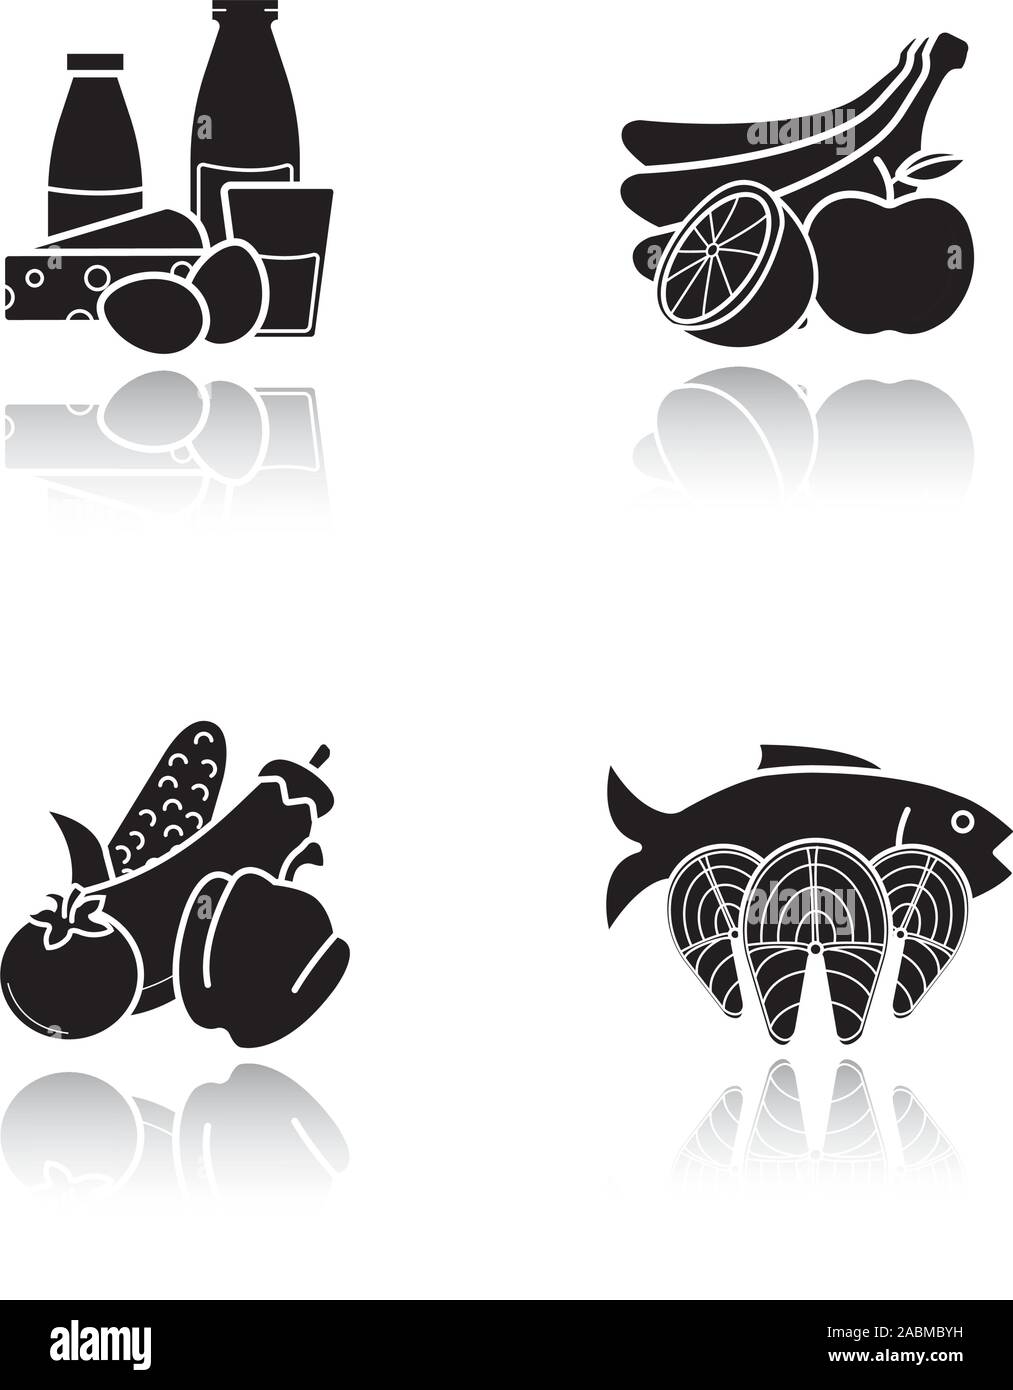 Lebensmittelgeschäft Produkte Schatten schwarze Symbole gesetzt. Essen Kategorien. Milchprodukte, Fisch und Meeresfrüchte, Obst und Gemüse. Isolierte Vektorgrafiken Stock Vektor